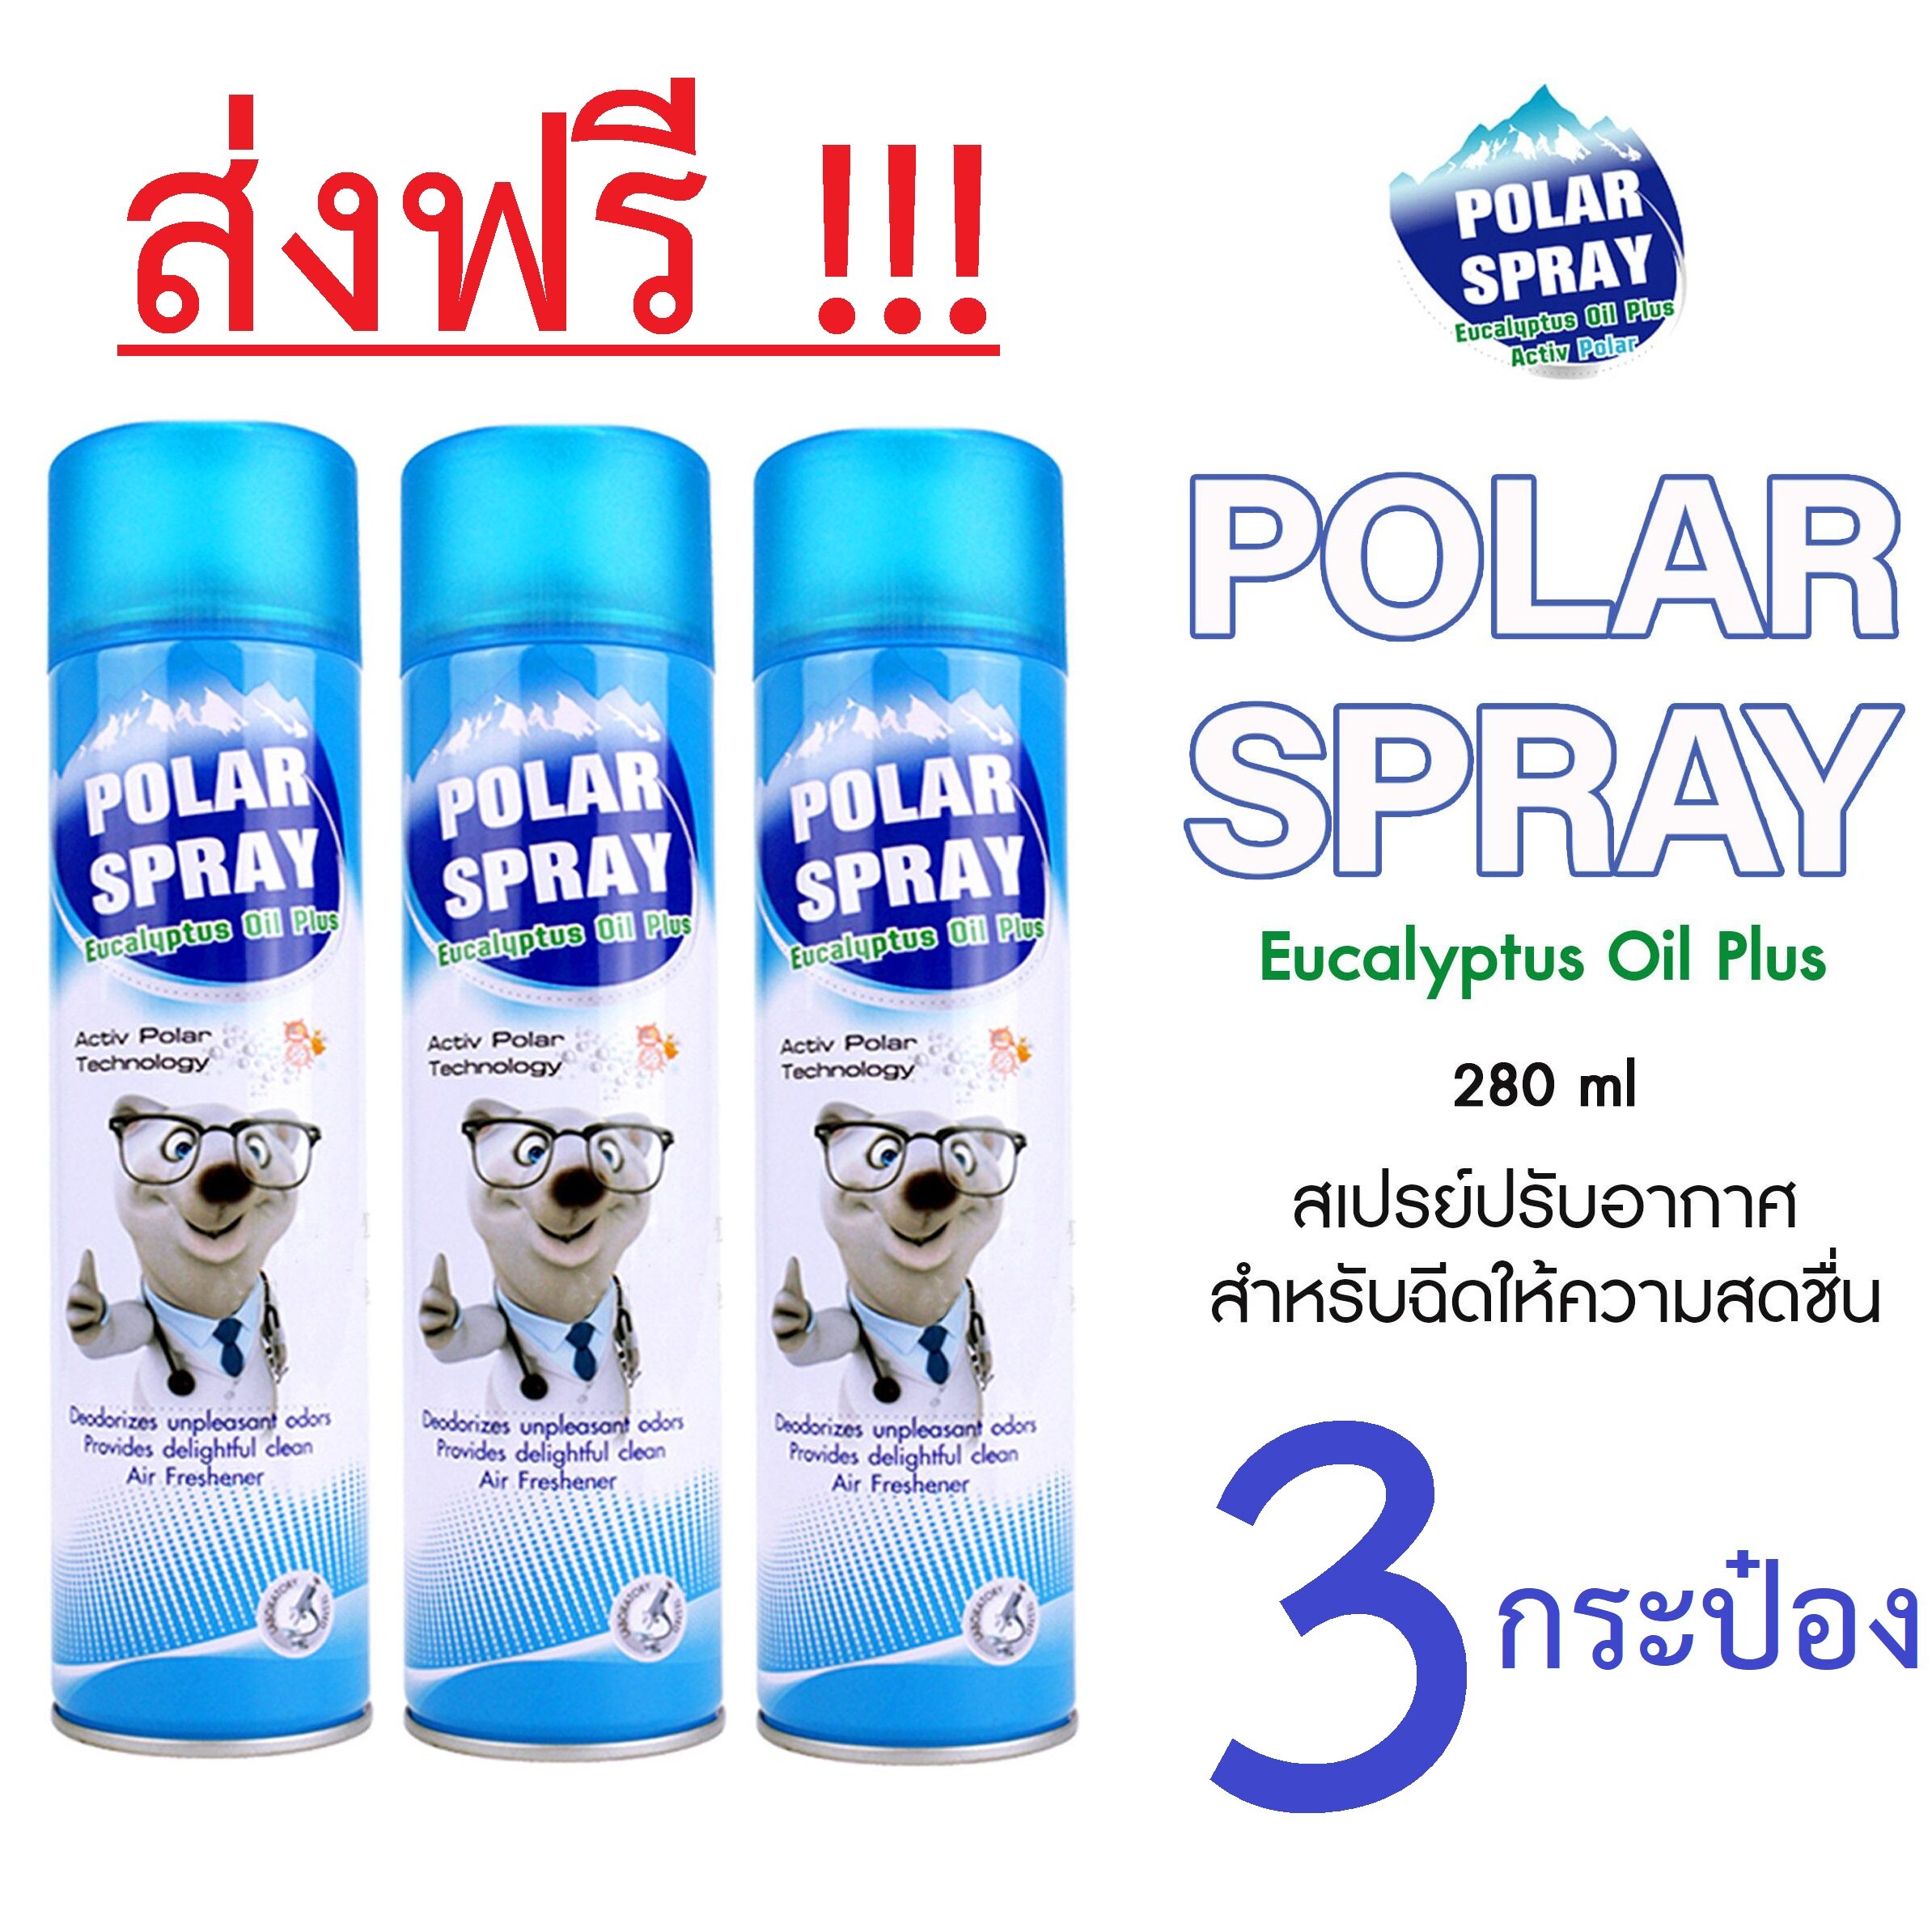 โปรโมชั่น [ส่งฟรี] Polar Spray Eucalyptus Oil Plus โพลาร์ สเปรย์ ยูคาลิปตัส แพ็ค3ขวด (280ml.x3) THREE CAN